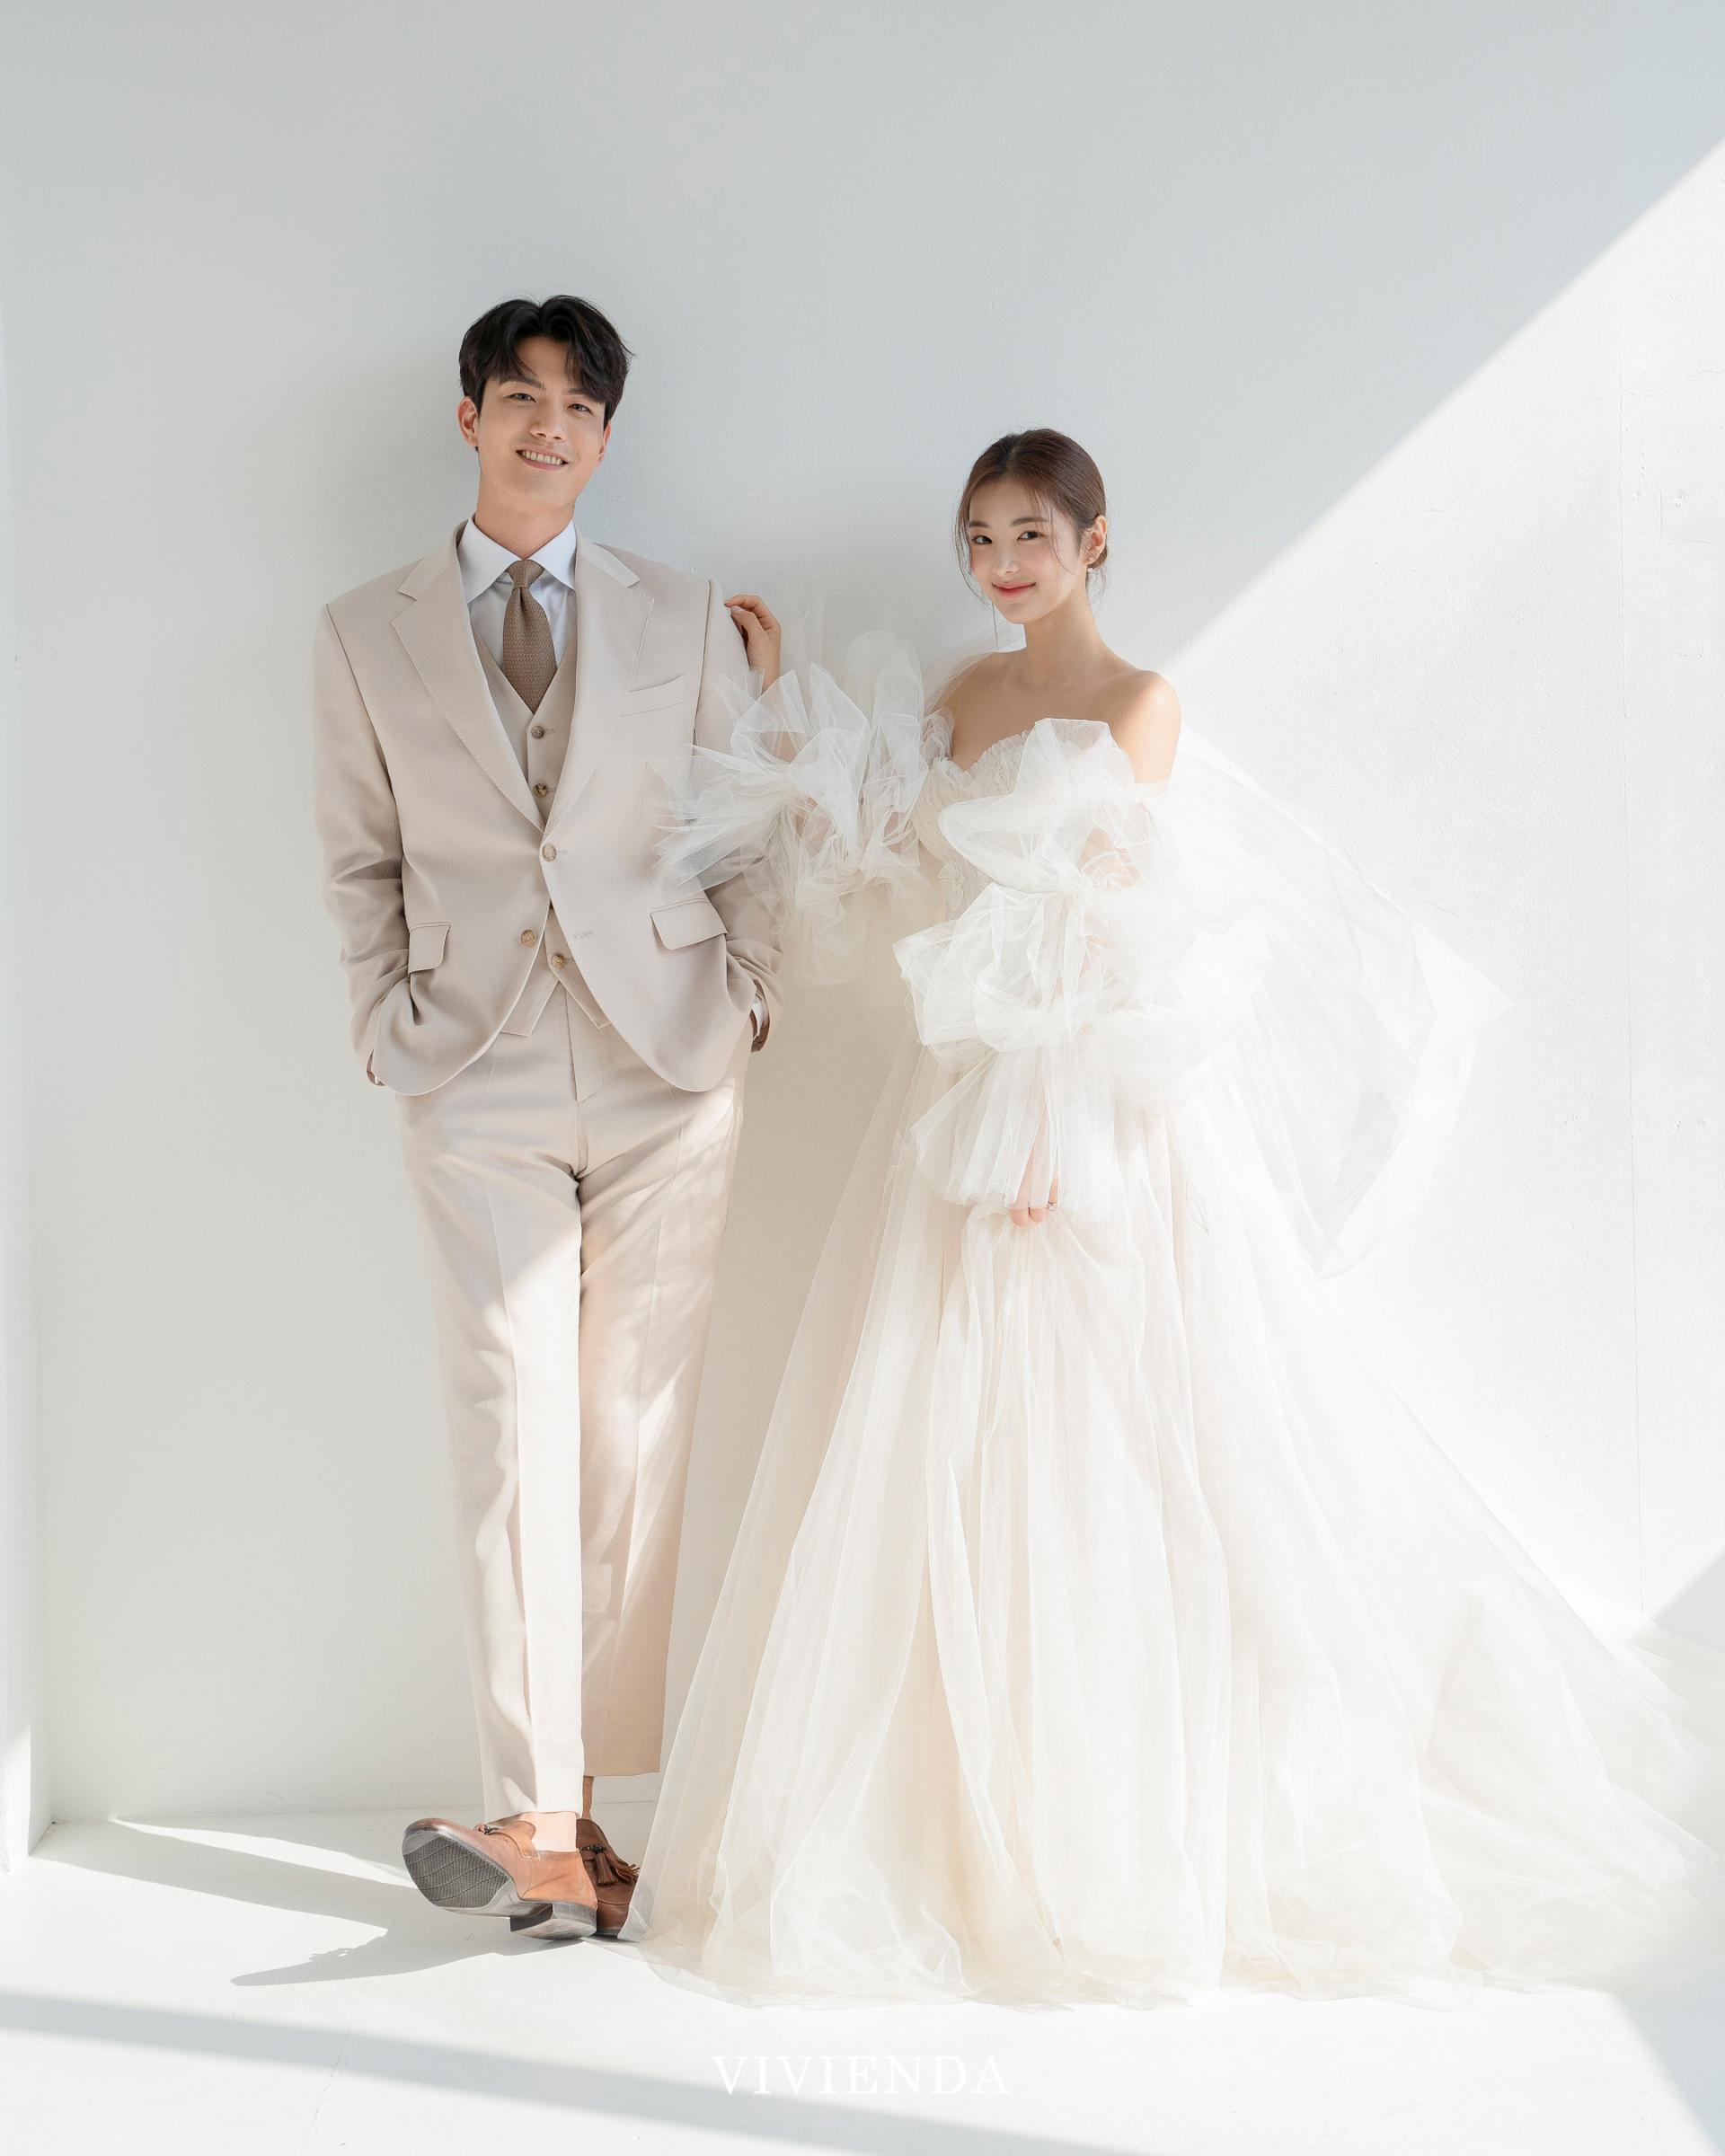 KOREAN WEDDING E- VIVIENDA STUDIO : korea wedding pledge